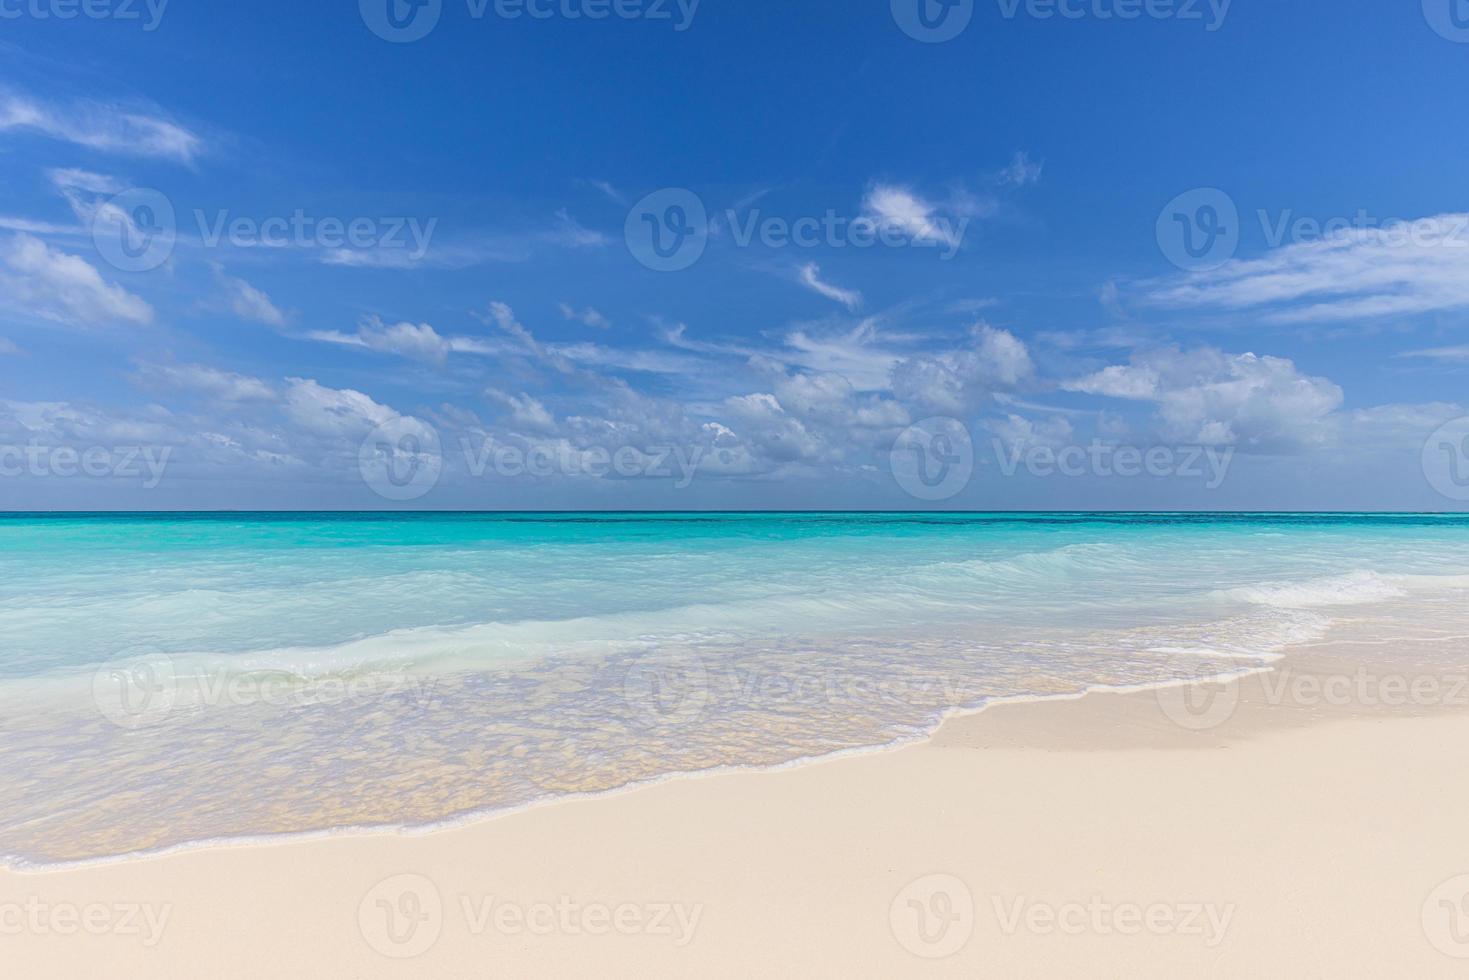 primer plano de la arena en la playa y el cielo azul de verano. paisaje panorámico de la playa. playa tropical vacía y paisaje marino. nubes de cielo azul, arena suave, calma, luz solar tranquila y relajante, estado de ánimo tranquilo de verano foto